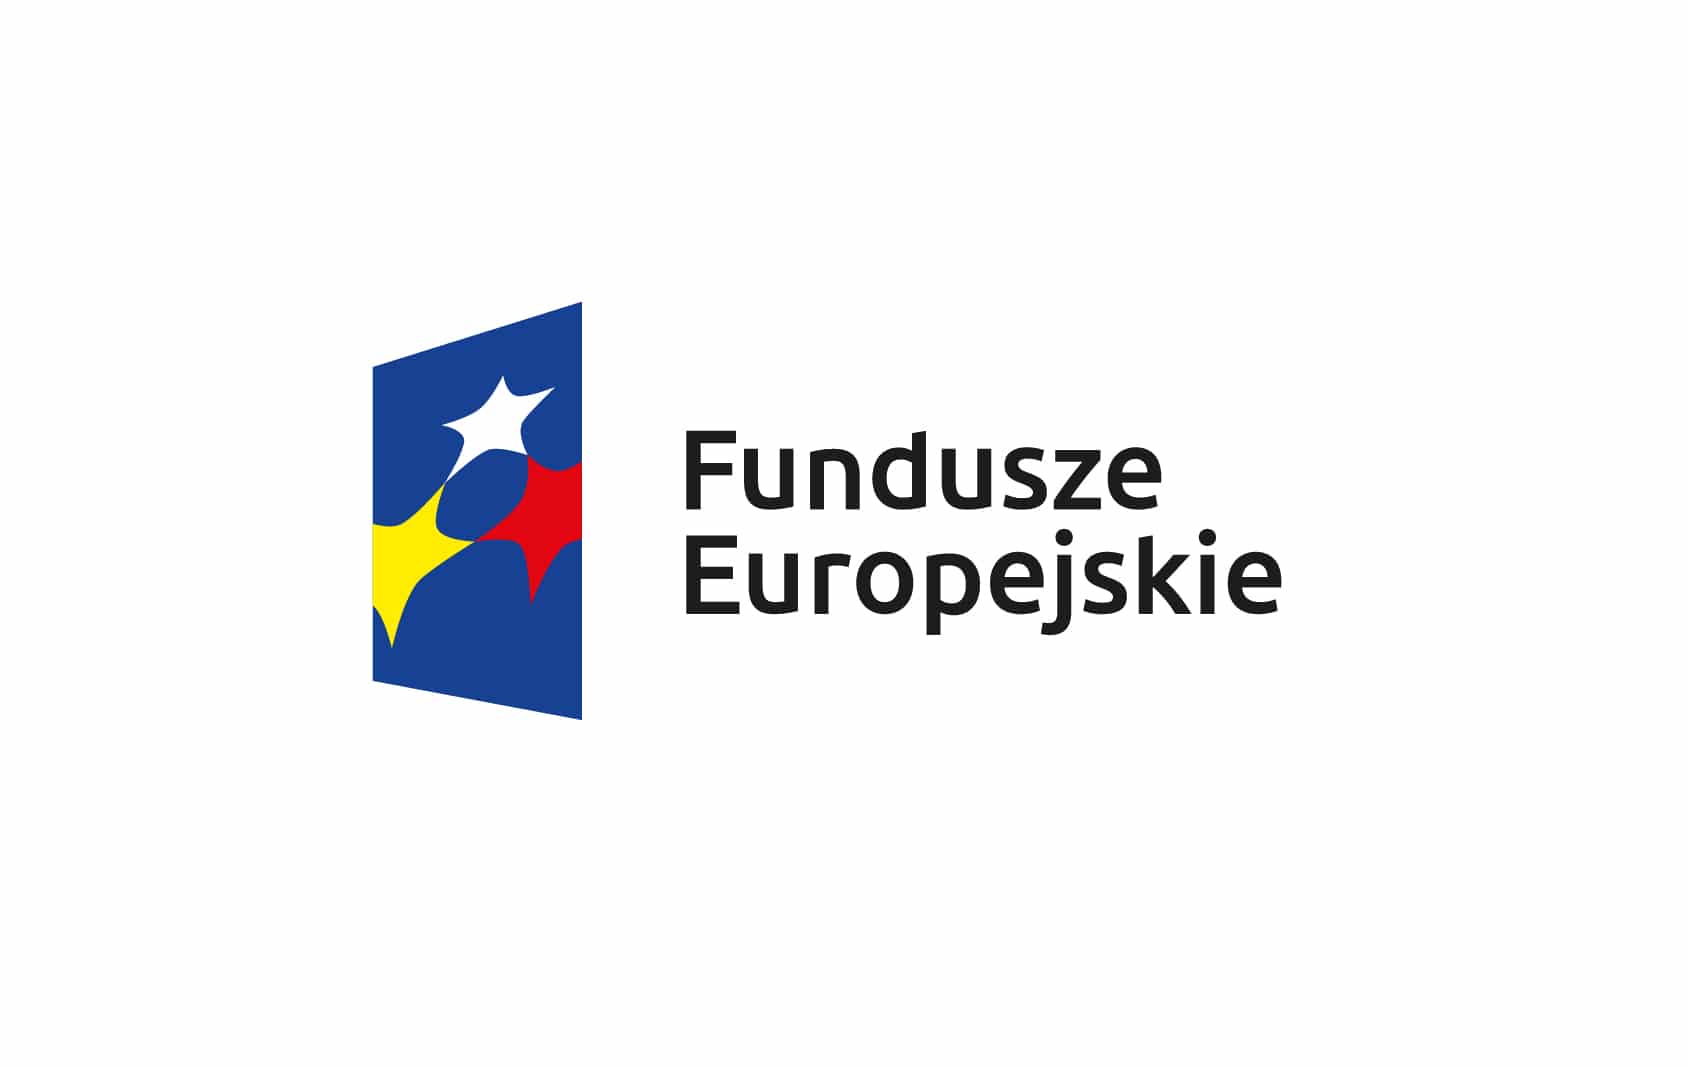 Fundusze Europejskie Polska Cyfrowa po lewej stronie znak graficzny na tle niebieskiego trapezu układ połączonych gwiazd po prawej stronie czarny napis Fundusze Europejskie